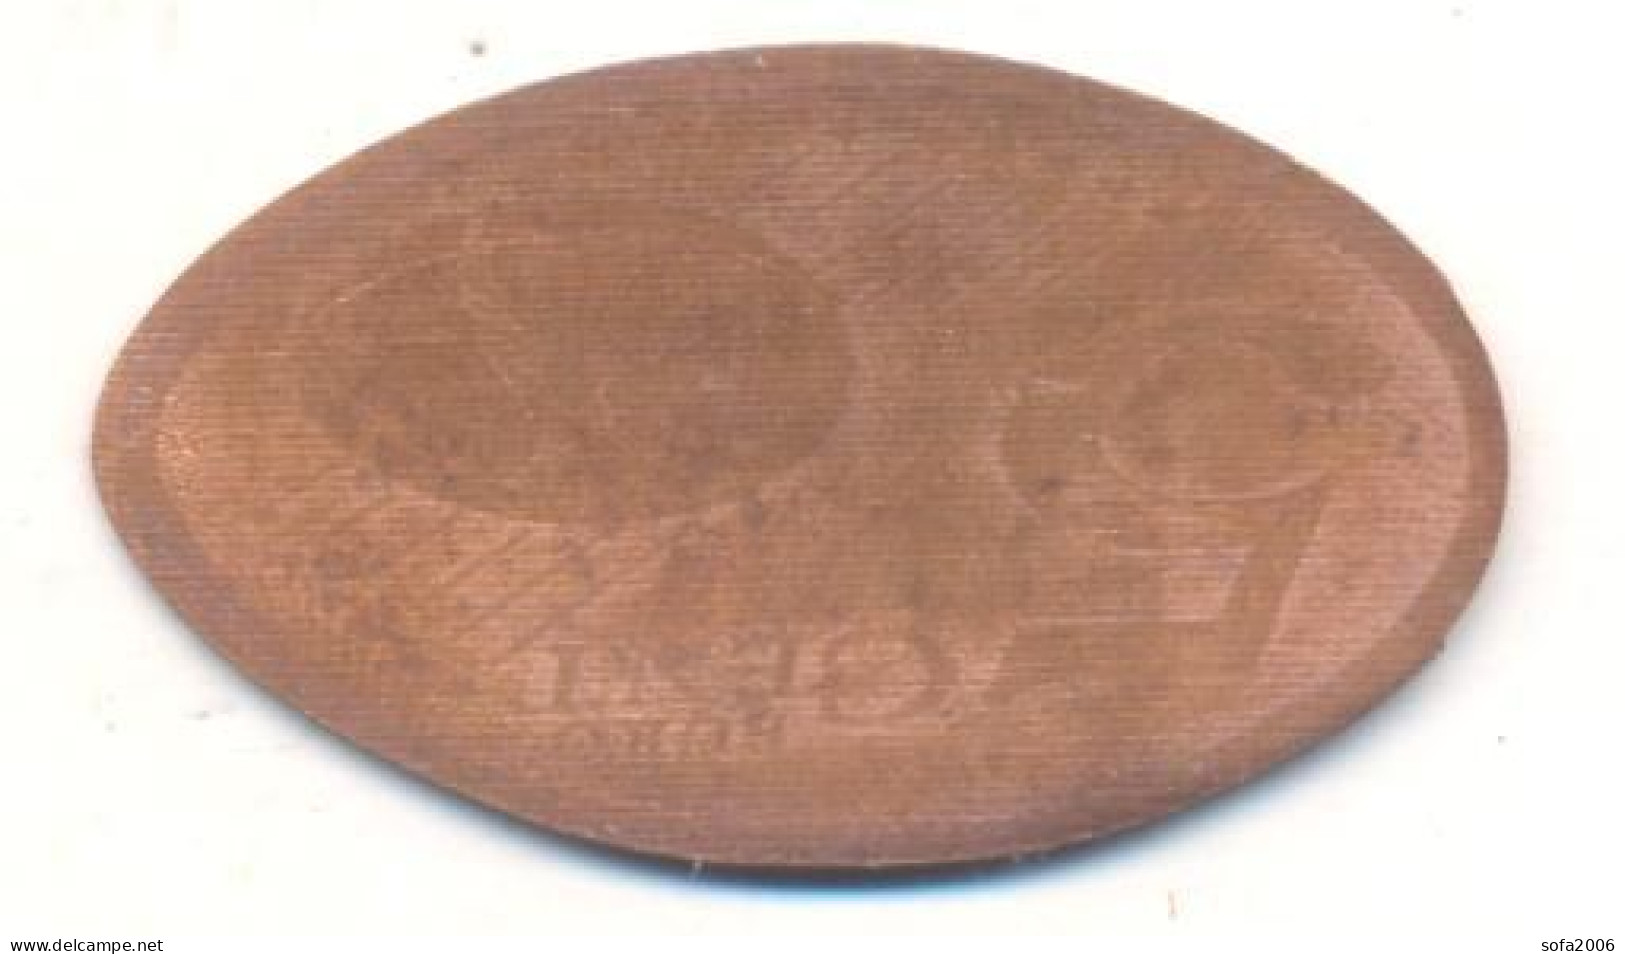 Souvenir Jeton Token Germany-Deutschland Berlin Brandenburger Tor - Elongated Coins